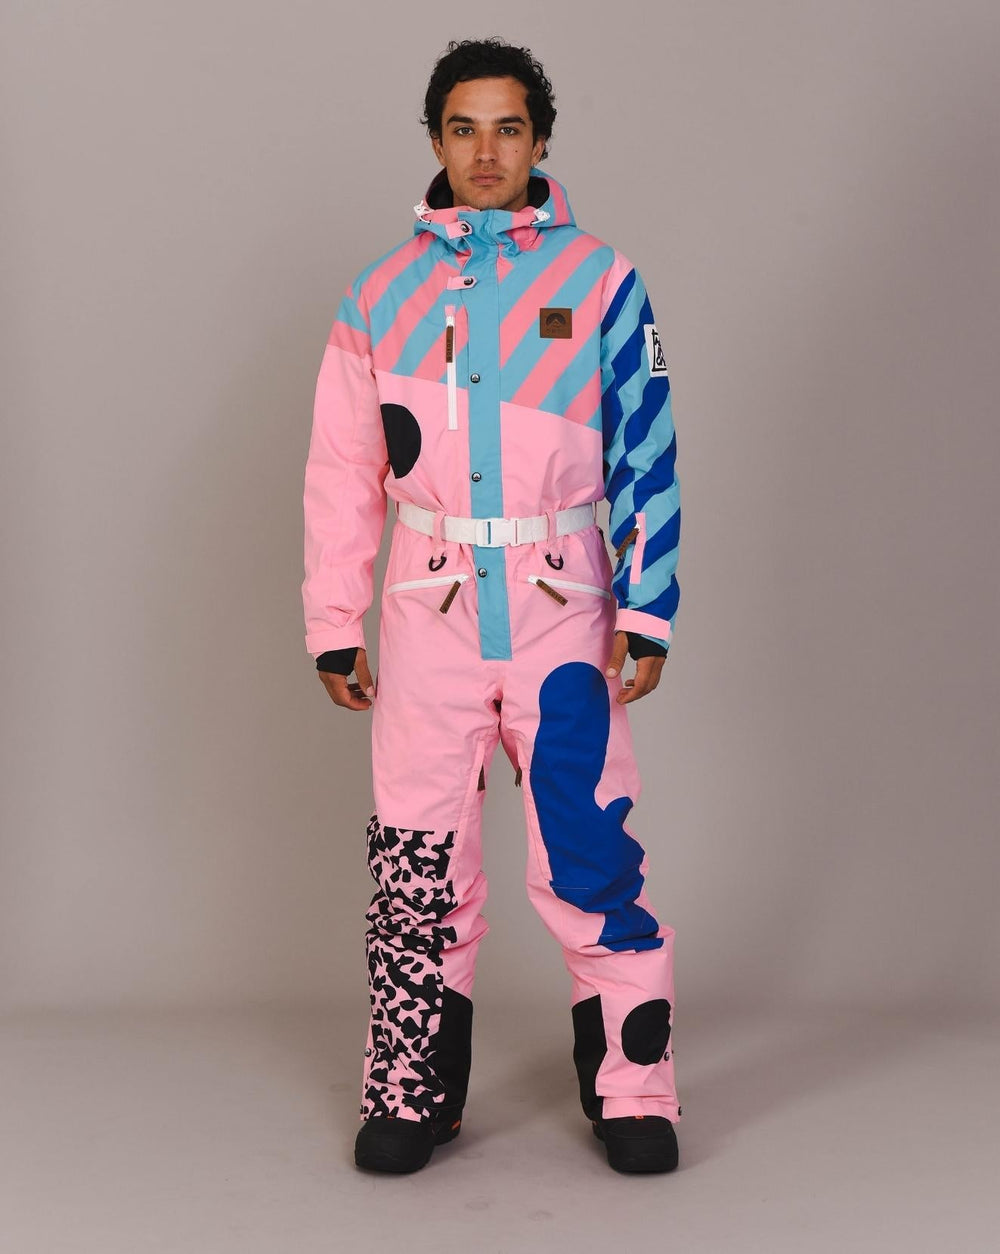 Mint & Pink Ladies Ski Jacket - OOSC Clothing